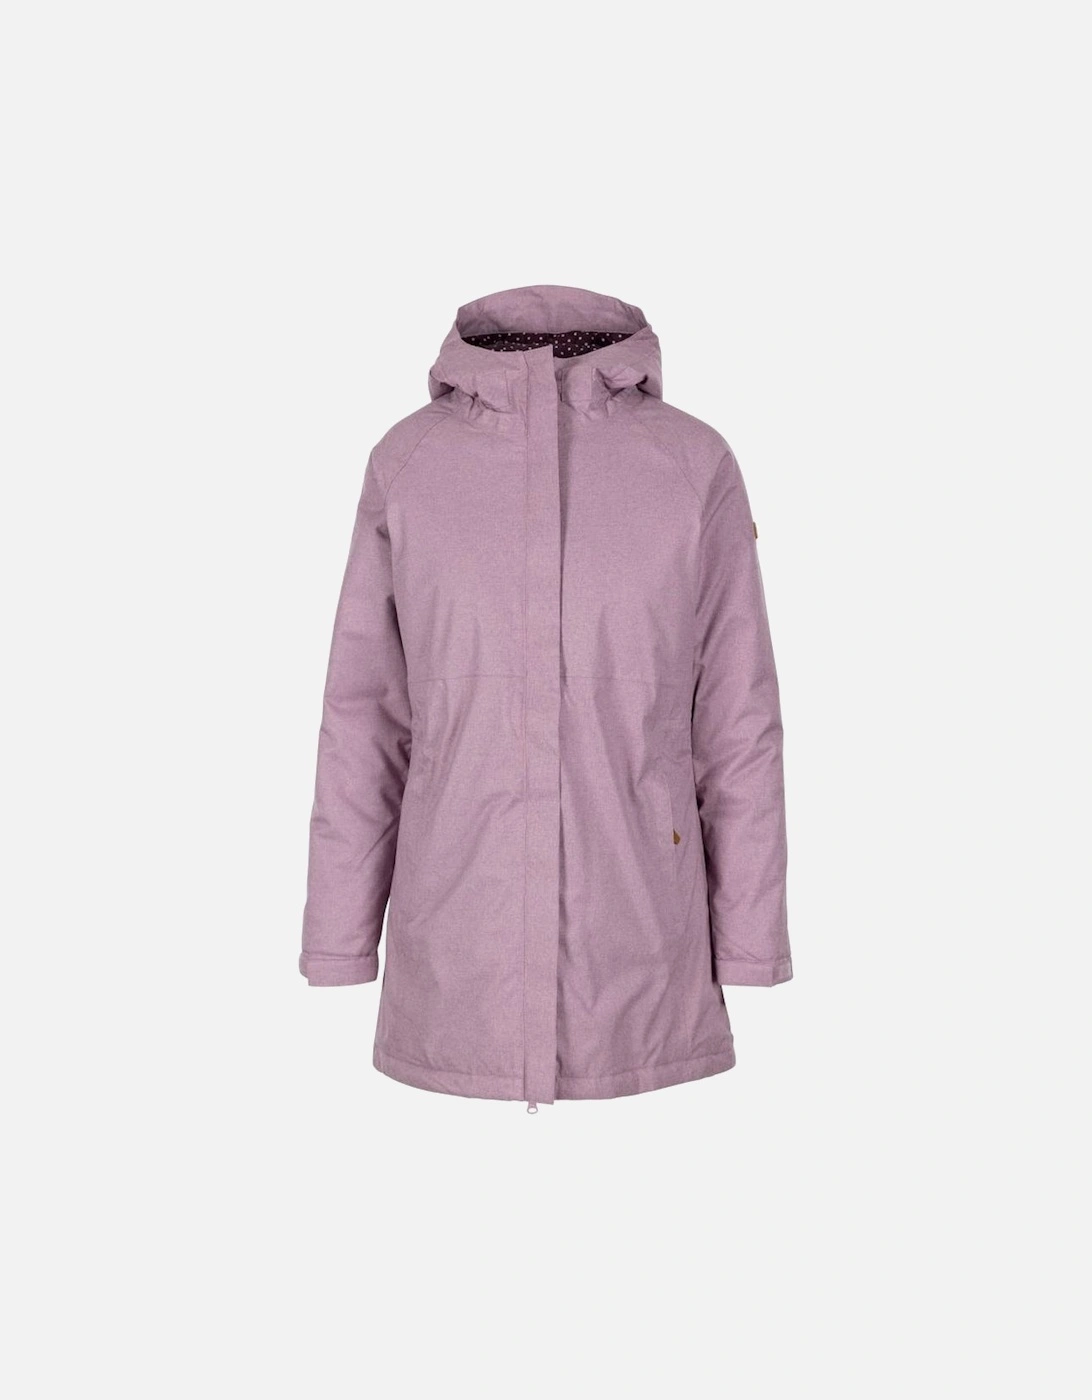 Womens/Ladies Wintertime Waterproof Jacket, 4 of 3